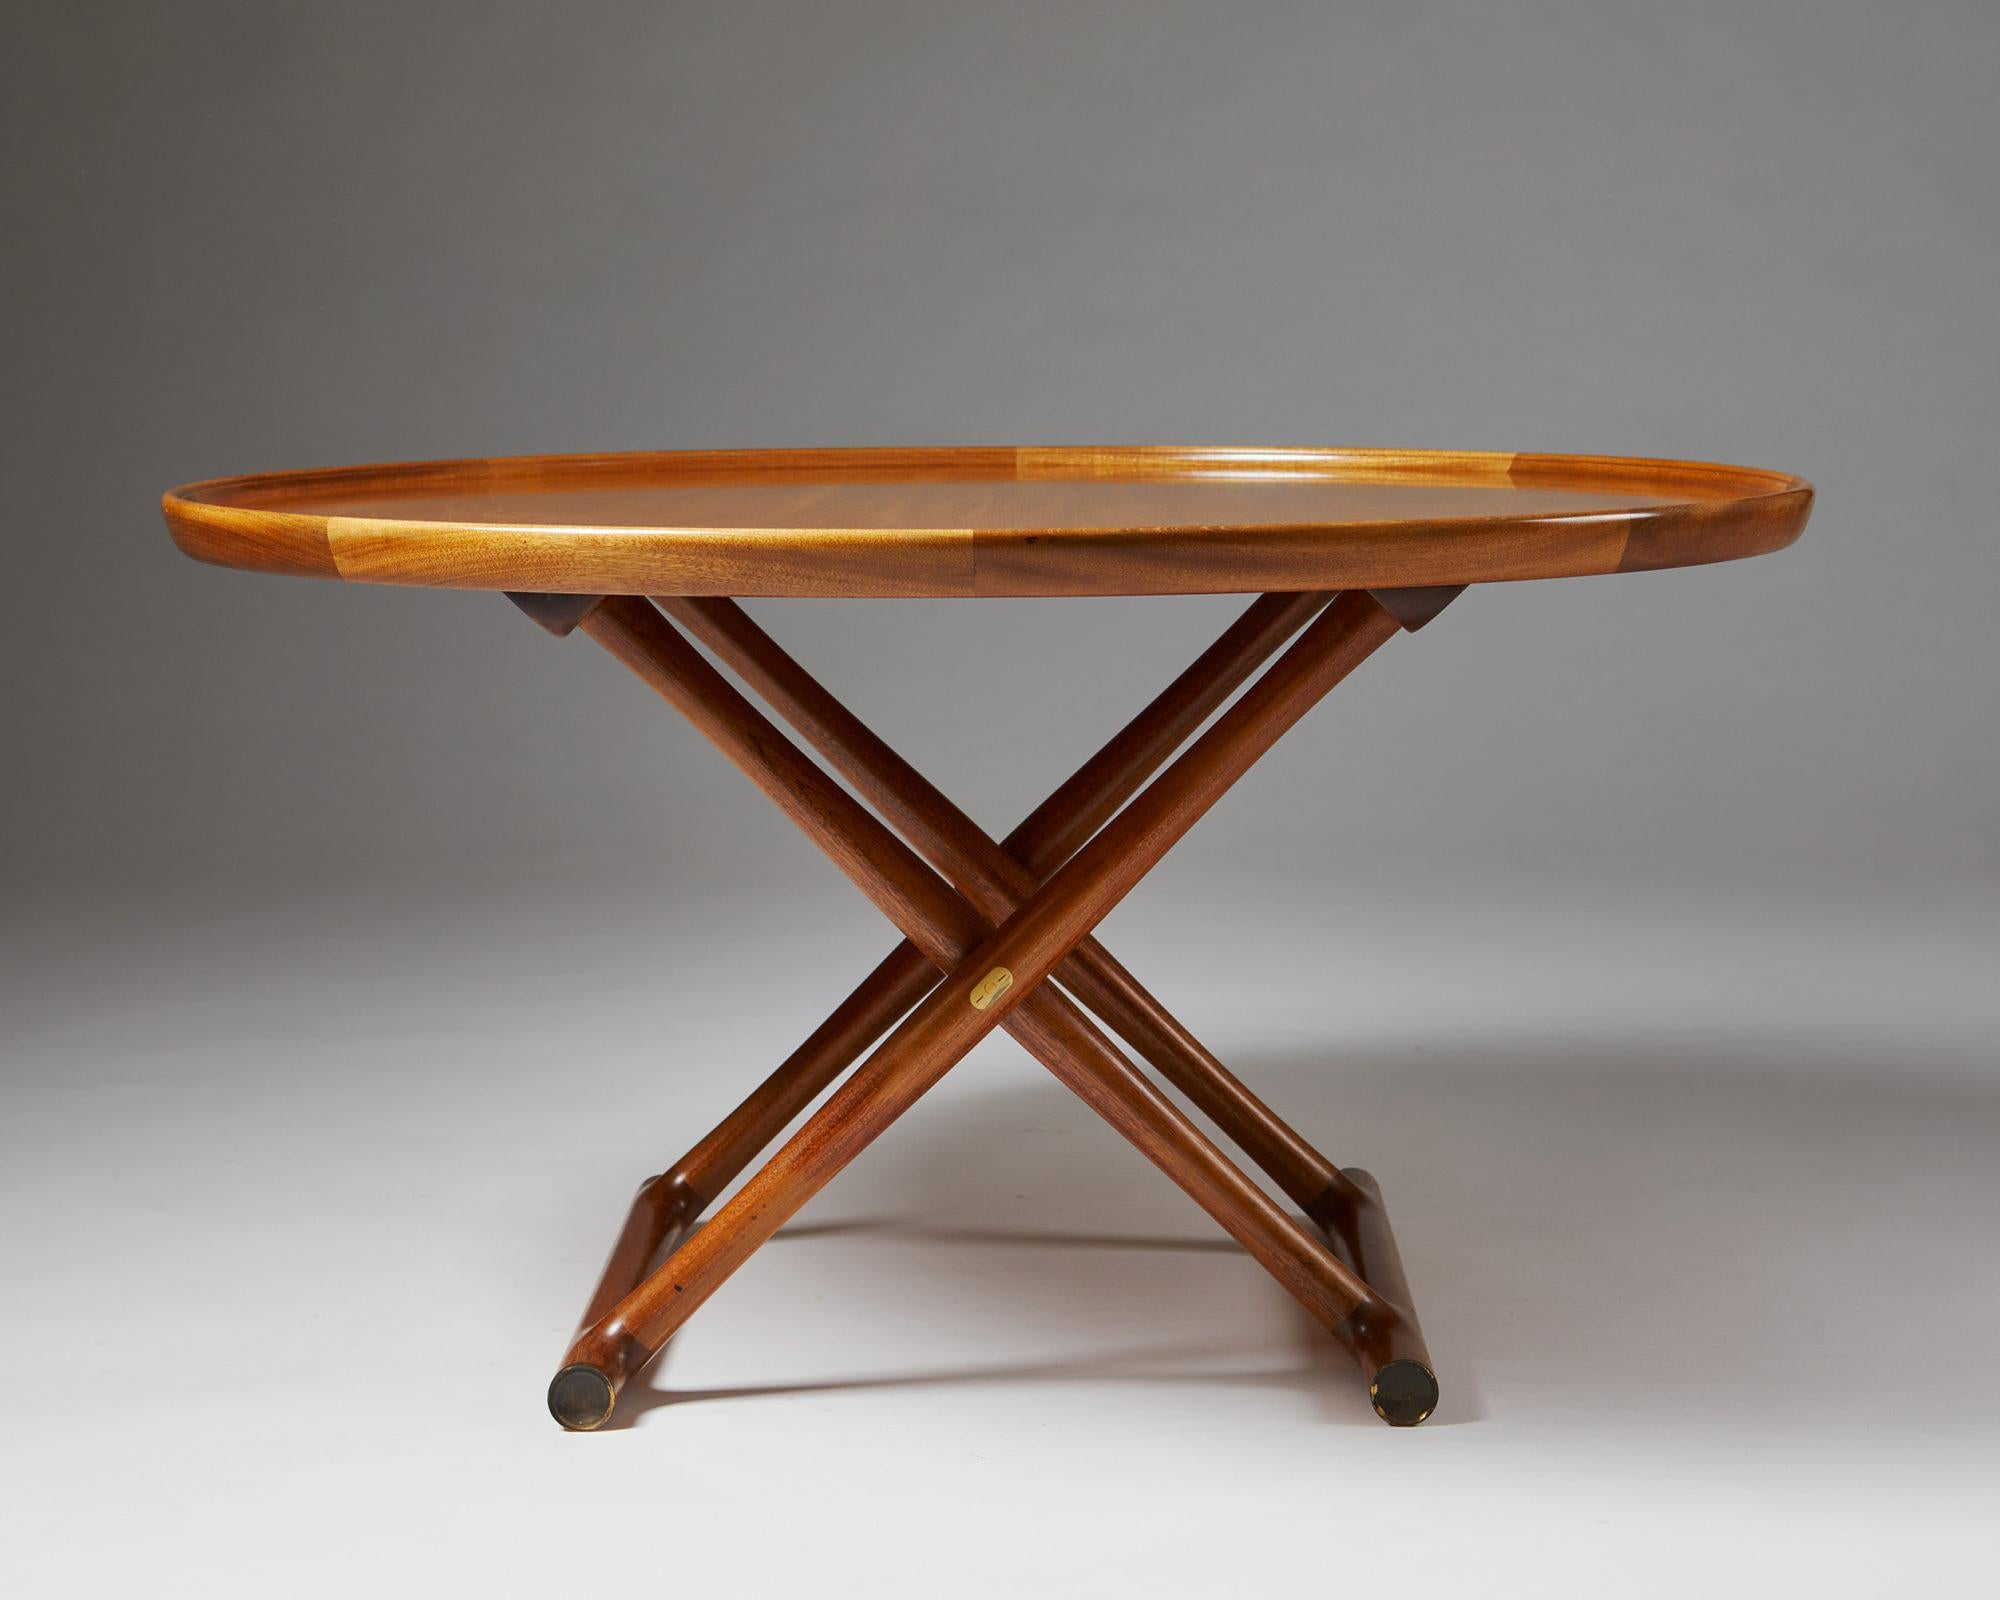 Danish Occasional Table “Egyptian Table” Designed by Mogens Lassen, Denmark, 1940s